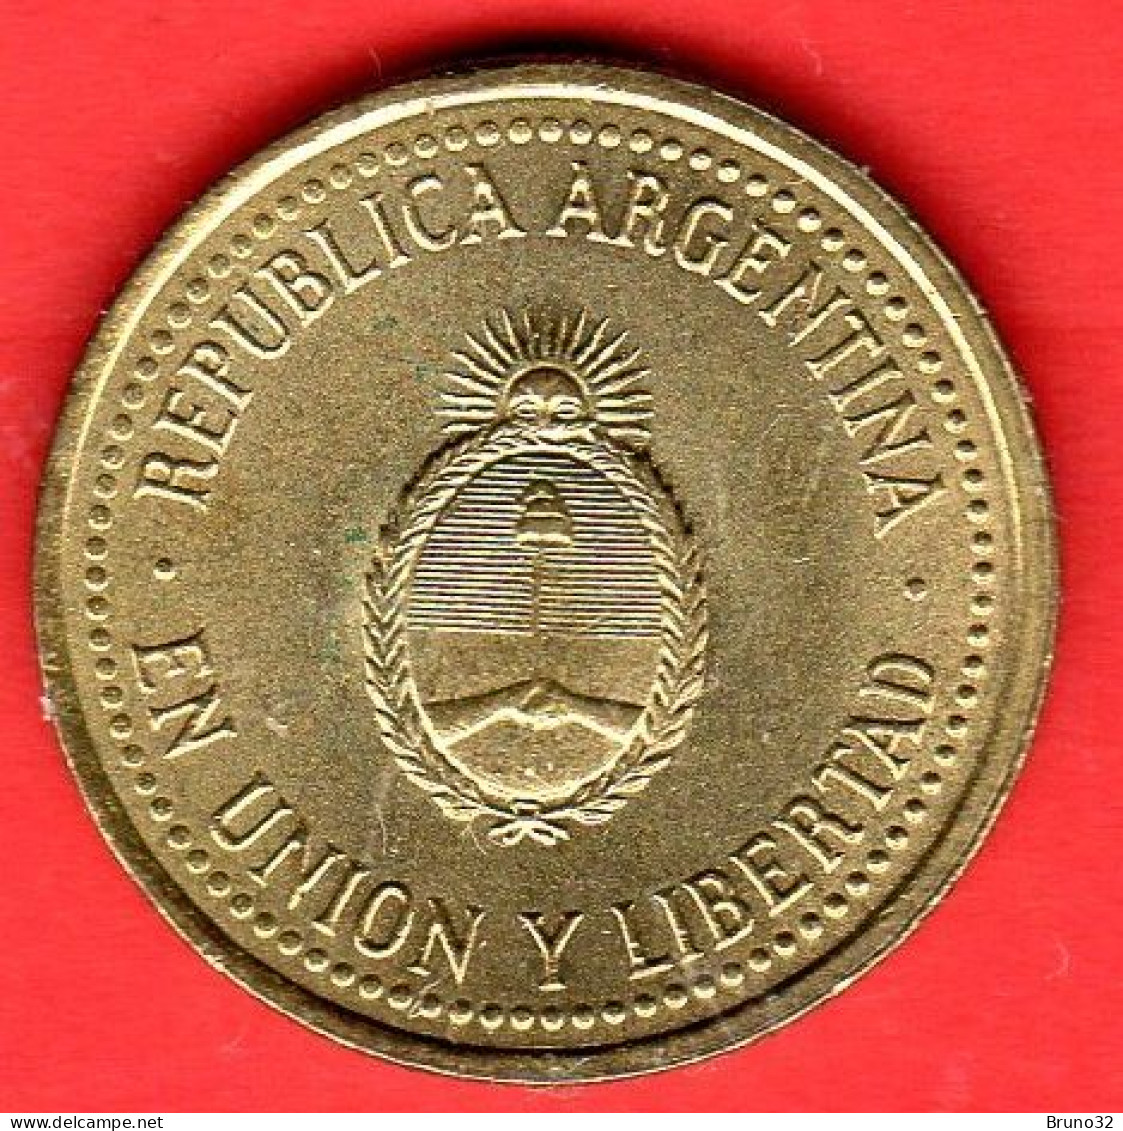 ARGENTINA - 1992 - 10 Centavos - QFDC/aUNC - Come Da Foto - Argentine